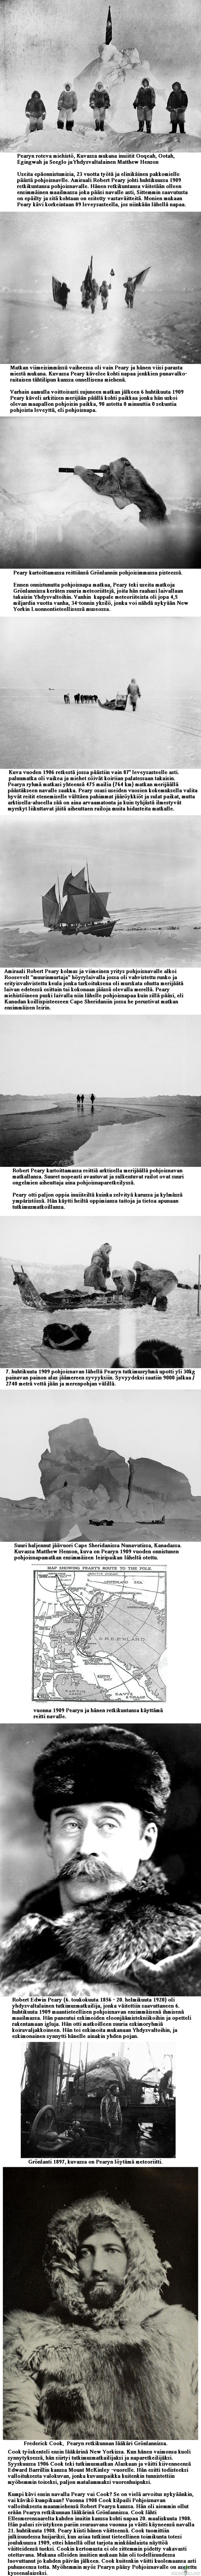 Robert Edwin Peary, valkoisen autiomaan tutkimusmatkailija - Valokuvia yli 100 vuoden takaa Pearyn retkiltä arktikselta.

Peary yritti kolme kertaa turhaan päästä Pohjoisnavan lähelle, vuosina 1900, 1902 leveysasteelle 84° 17&#039; ja 1906. Vuoden 1906 retki vei Pearyn omien tietojensa mukaan leveysasteelle 87° 6&#039; jo noin 240 kilometrin päähän navasta, mutta tämäkin Pearyn saavutus on kiistetty.
 
Peary pääsi pohjoisnavalle 6. huhtikuuta 1909 käyttäen italialaisen Umberto Cagnin kehittämää tekniikka, jossa kärkipartiot raivaavat tietä ja huoltokuormastot irtautuvat vaihe vaiheelta matkasta pois. Pearyn tekniikka oli edelleen hiotumpi. Ajatus oli se, ettei navalle asti pääsevän partion tarvitse kuljettaa kaikkia paluumatkalla tarvittavia tarvikkeita, vaan käytetään hyväksi muiden partioiden matkan varrelle luomia varastoja. Peary käytti monia eskimoiden tekniikoita ja eskimoita apuna. Miehet nukkuivat lumimajoissa. Viimeinen Bartlettin johtama Pearyn ryhmän rinnalla kulkenut apujoukko irtautui leveysasteella 87°.

Pearyn väitettä pohjoisnavalla käymisestä epäillään laajalti ja joitain perusteita tälle löytyy Pearyn lausunnoista ja muistiinpanoista. Peary väitti kirjassaan huhtikuun 5. päivänä mitatun 89° 25&#039;, vaikka tuona päivänä ei tehty muistiinpanojen ja kongressin valiokunnan kuulustelujen mukaan mittauksia. Pearyn matkavauhti oli ilmoitusten mukaan niinkin kova kuin 36-57 km/päivä. Neljänä viimeisenä vuorokautena olisi edetty 57 km/päivä, vaikka naparetkillä oli tuohon aikaan tavallista vaeltaa 10-20 km ja sekin vaivalloisesti. Peary väitti palanneensa 87° leveysasteelle &quot;Camp Jesupin leiristä&quot; alle 56 tunnissa, joka on melkein 240 km. Tällöin olisi kuljettu mahdottomat 120 km/päivä. 

Huomattavasti epäilyttävämpi oli Pearyn kilpailijan Frederick Cookin ilmoitus pohjoisnavalla käymisestä vuonna 1908. Erään Cookin retkikuntalaisen mukaan retkikunta olisi talvehtinut 1908 Kanadan pohjoisilla saarilla. Cook joutui myöhemmin vankilaan vakuutuspetoksen takia.